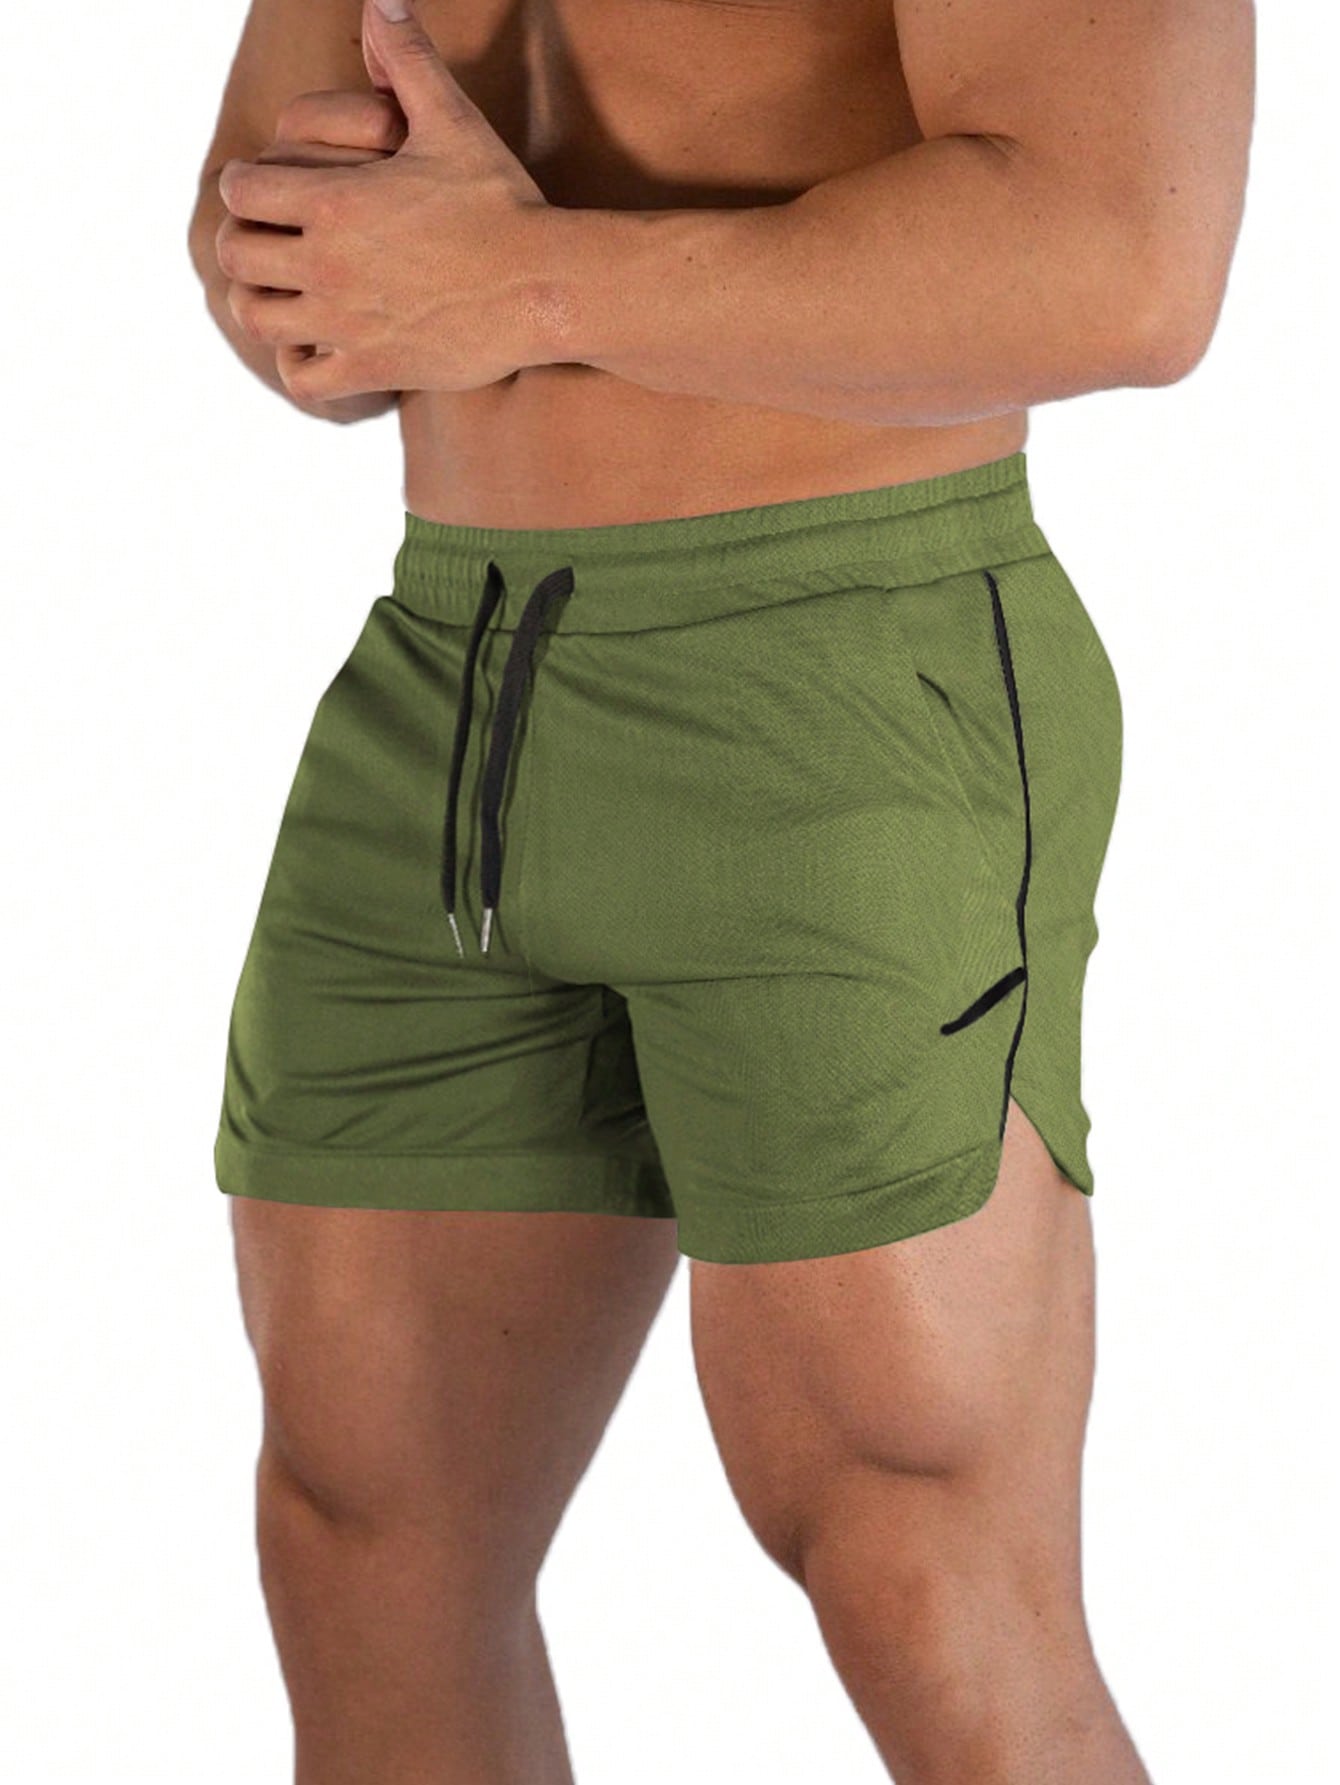 Мужские спортивные шорты SHEIN Fitness с карманами на талии и шнурком, армейский зеленый